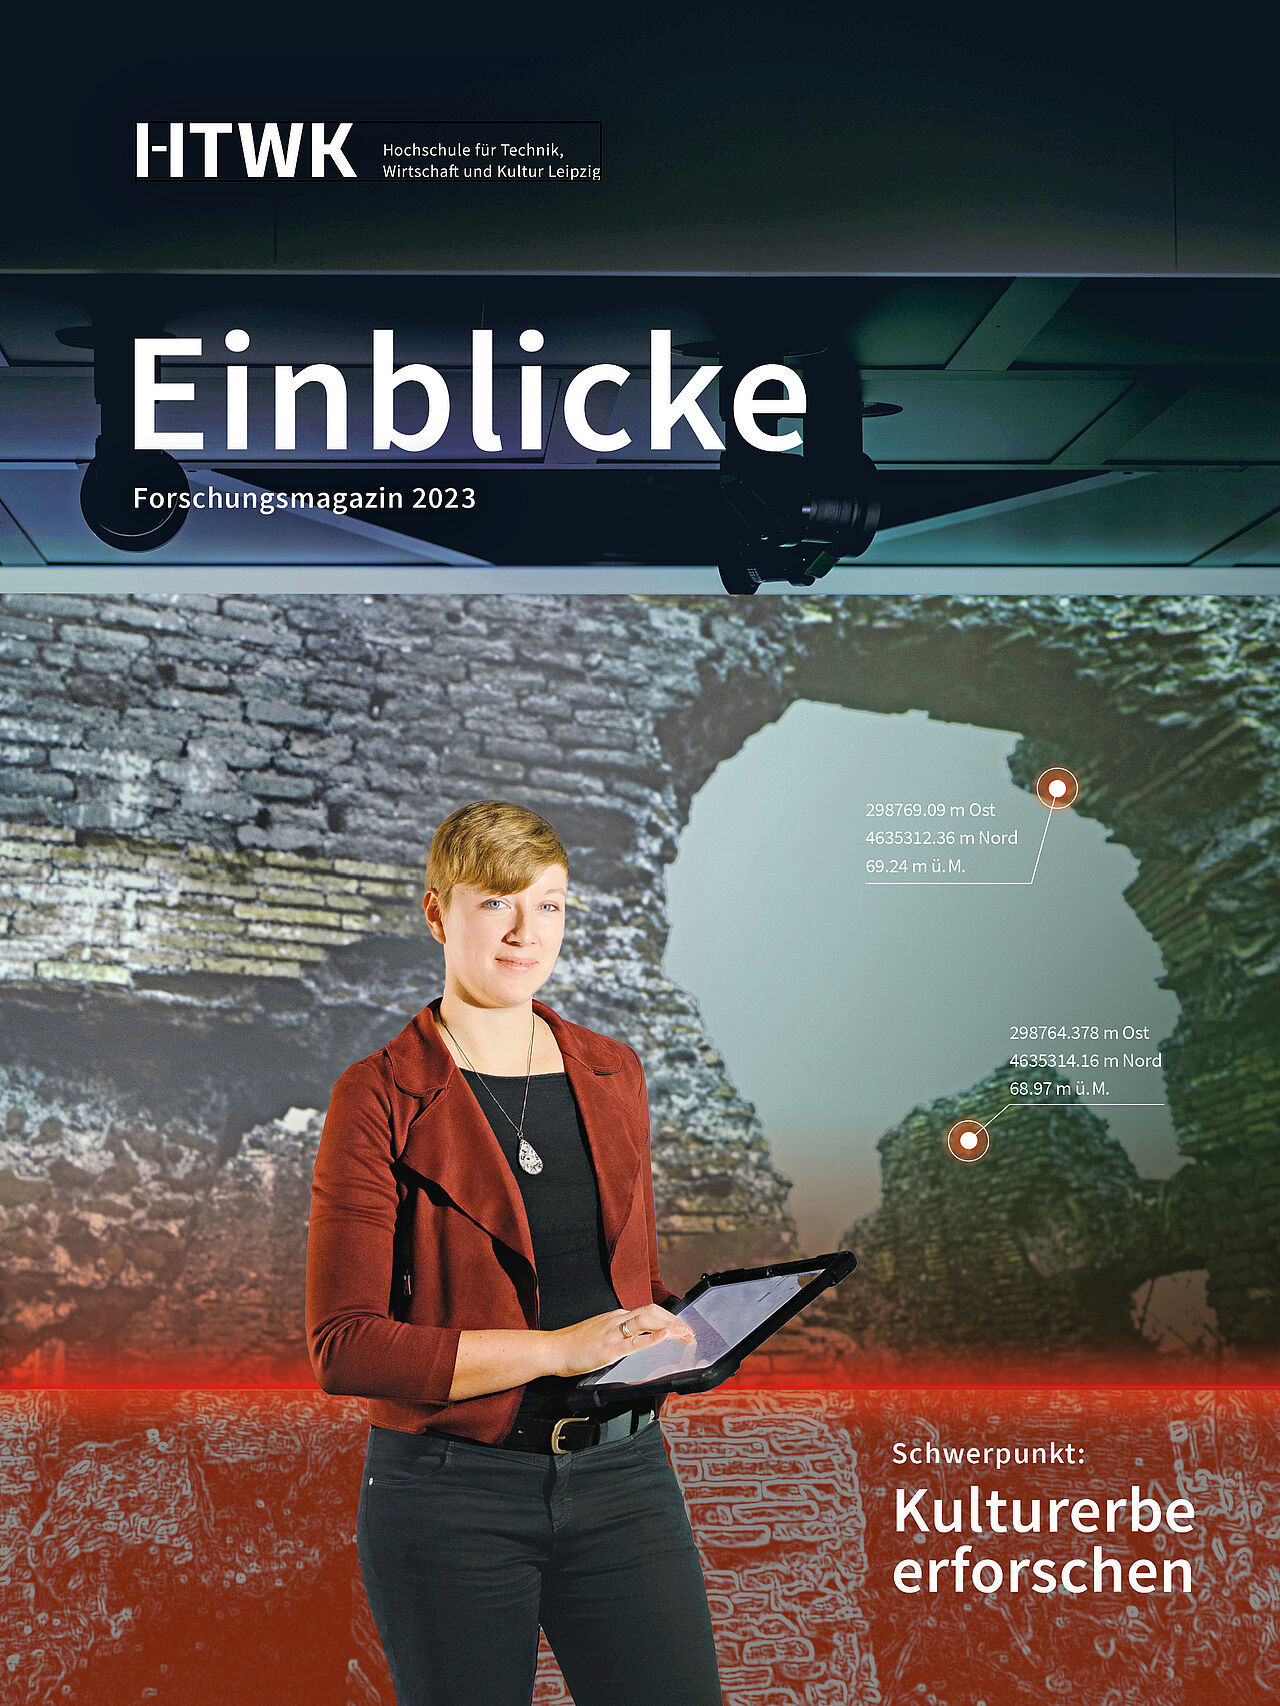 Auf dem Coverbild der Einblicke 2023 ist Forscherin Ilka Viehmann in der Cave der HTWK Leipzig zu sehen. In der Hand hält sie ein Tablet.